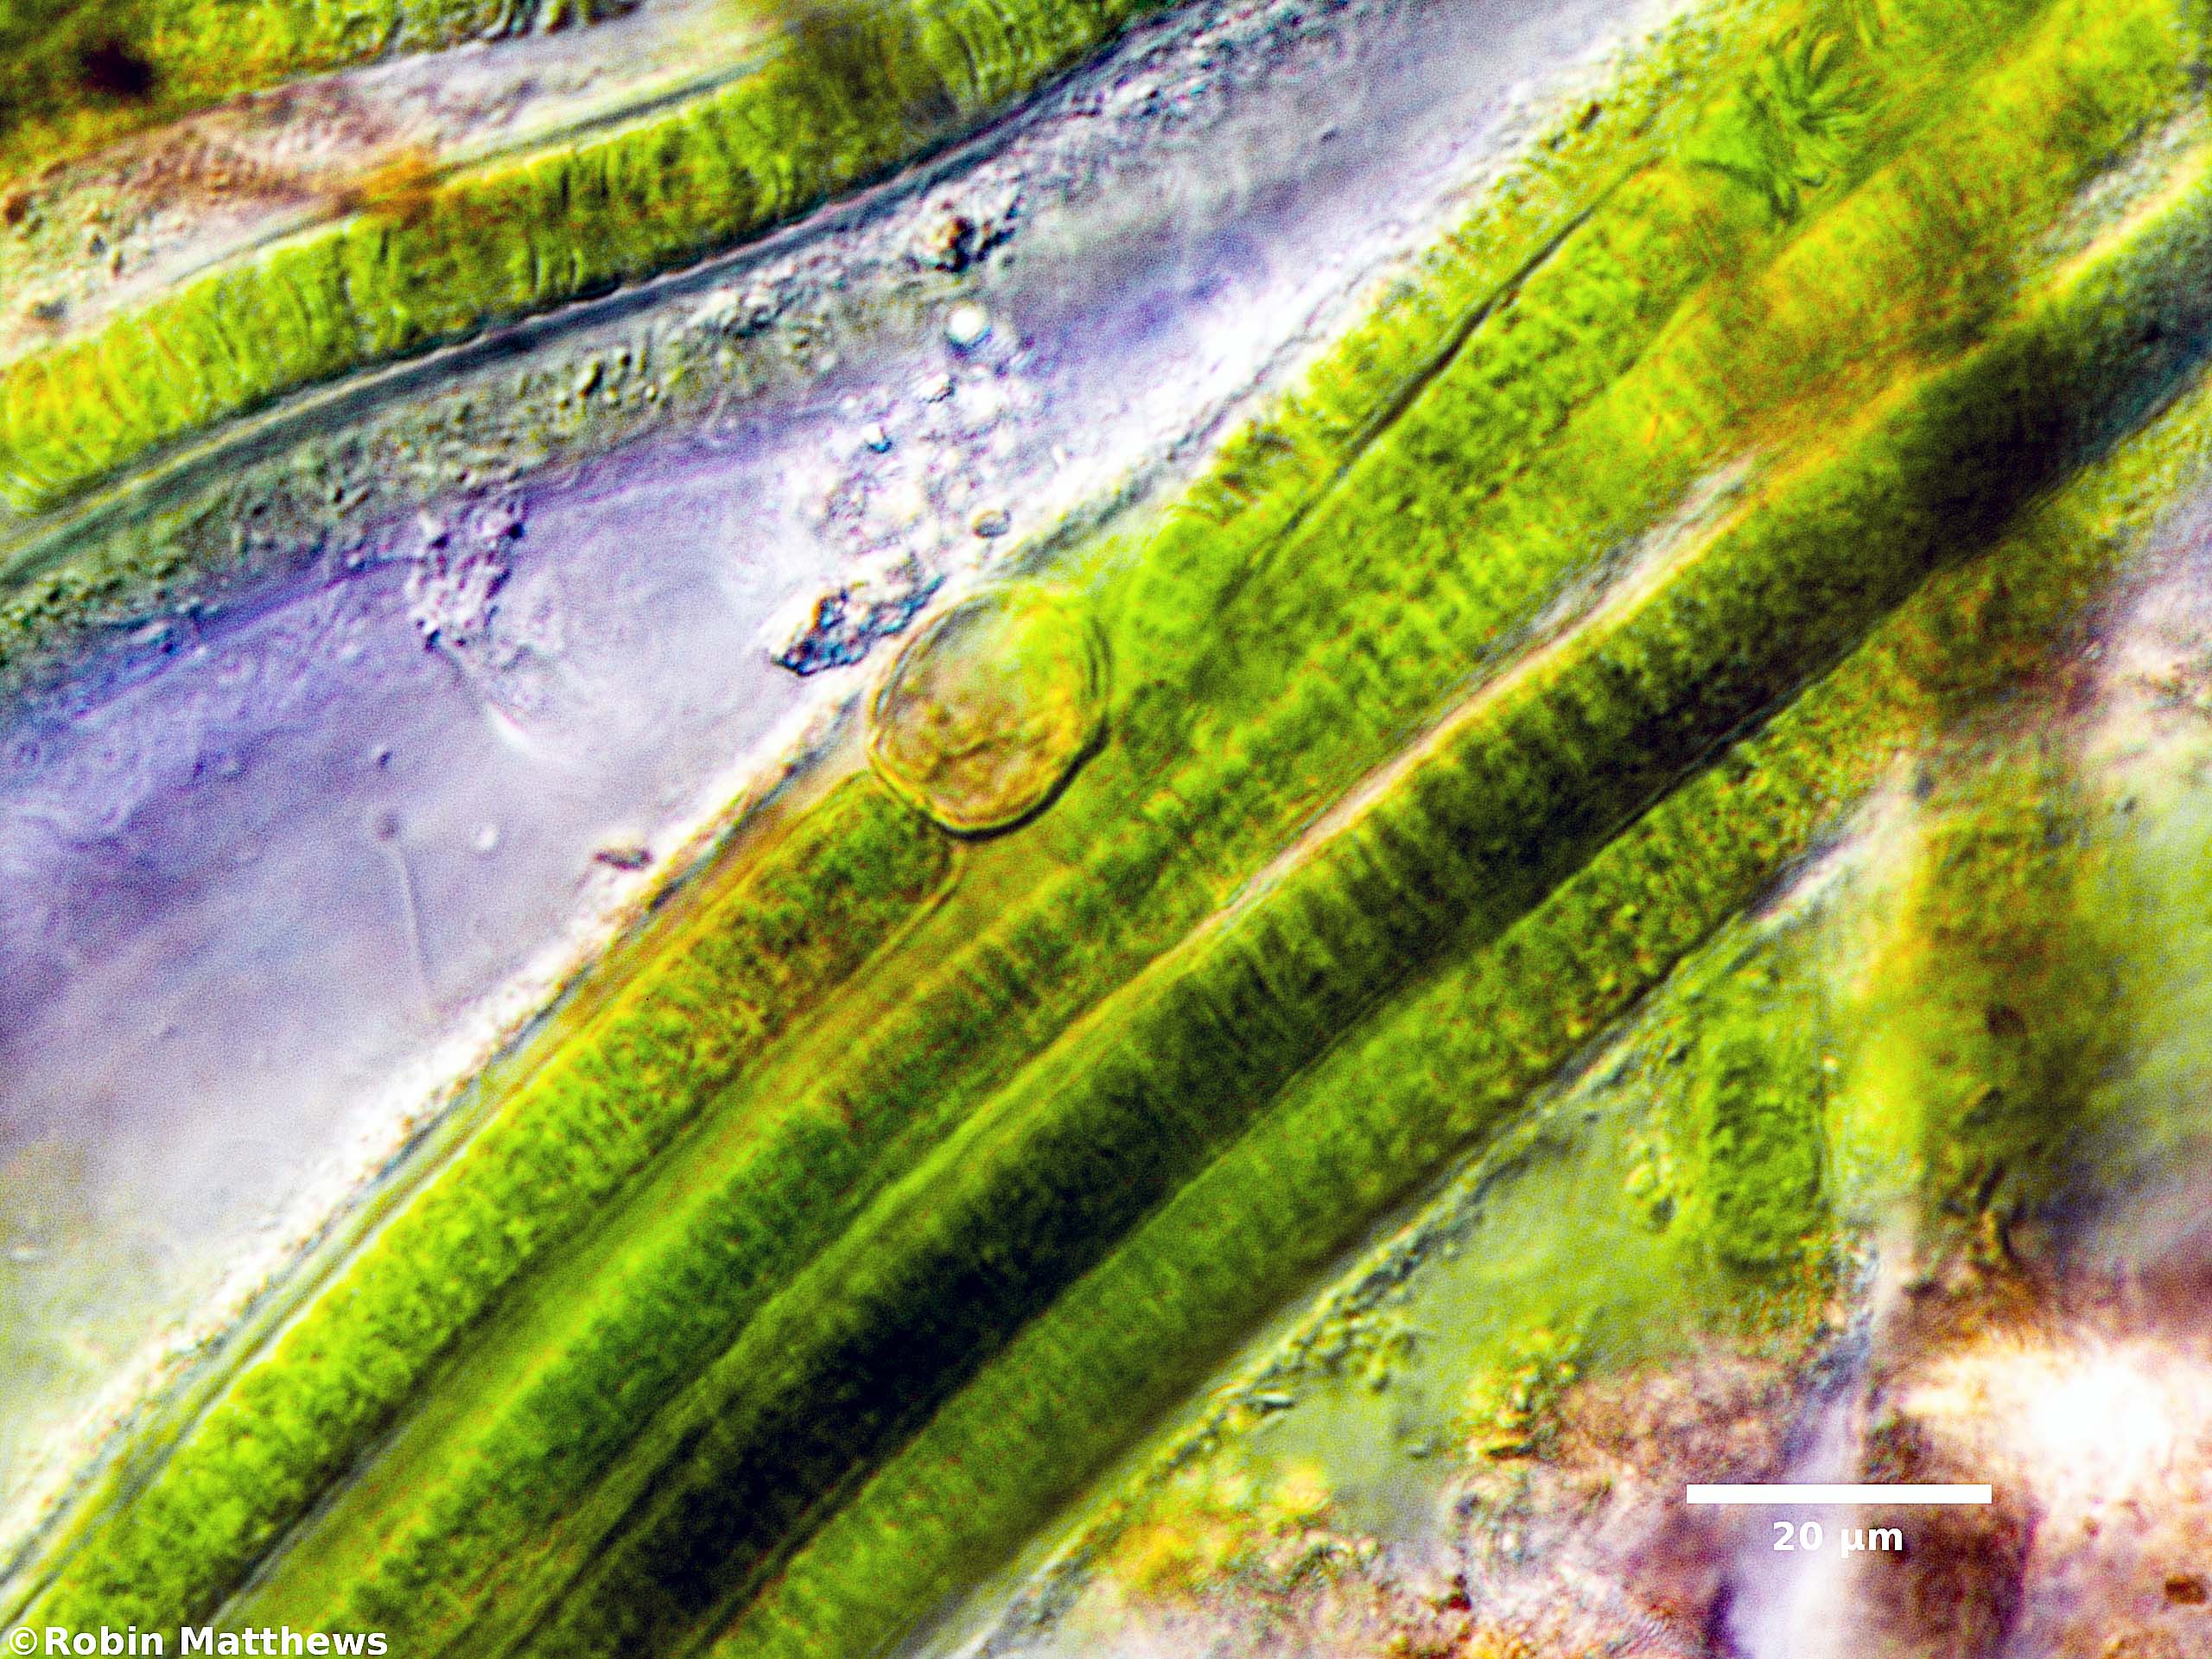 ././././Cyanobacteria/Nostocales/Tolypothrichaceae/Coleodesmium/wrangelii/coleodesmium-wrangelii-326.jpg